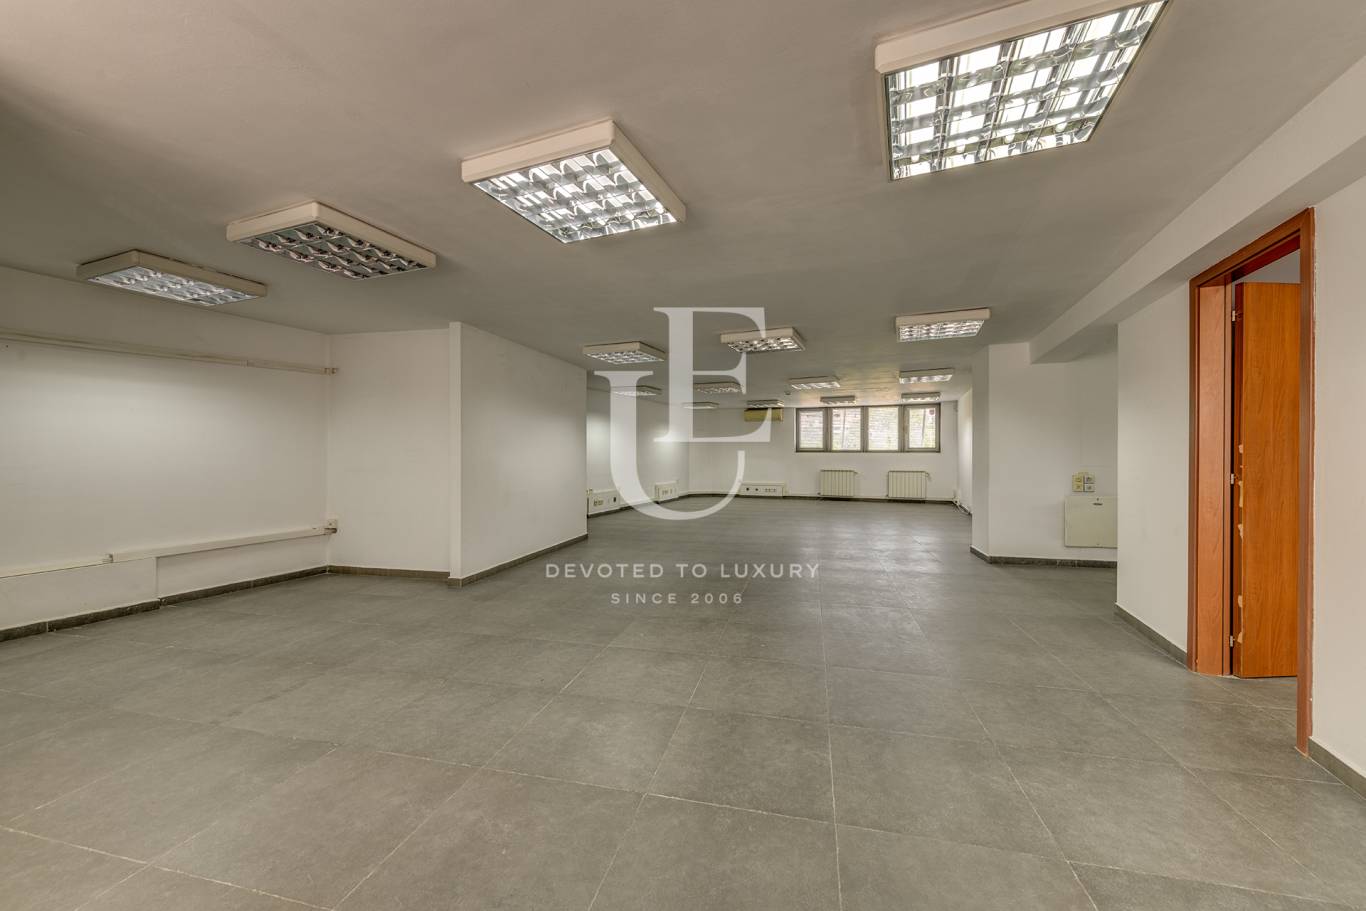 Офис под наем в София, Манастирски ливади - изток - код на имота: K20583 - image 1